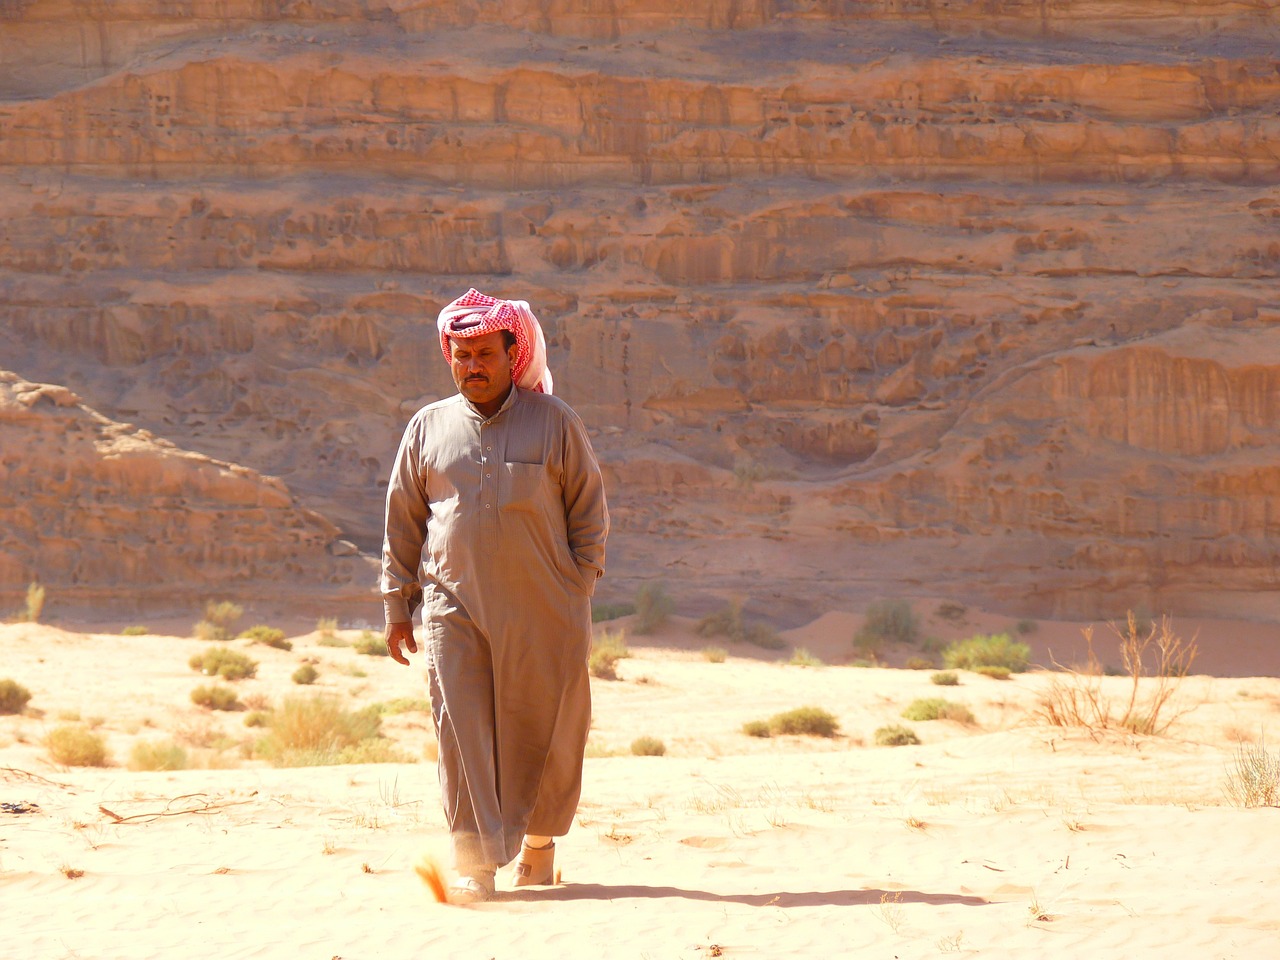 A Bedouin wandering in the Wadi Rum desert